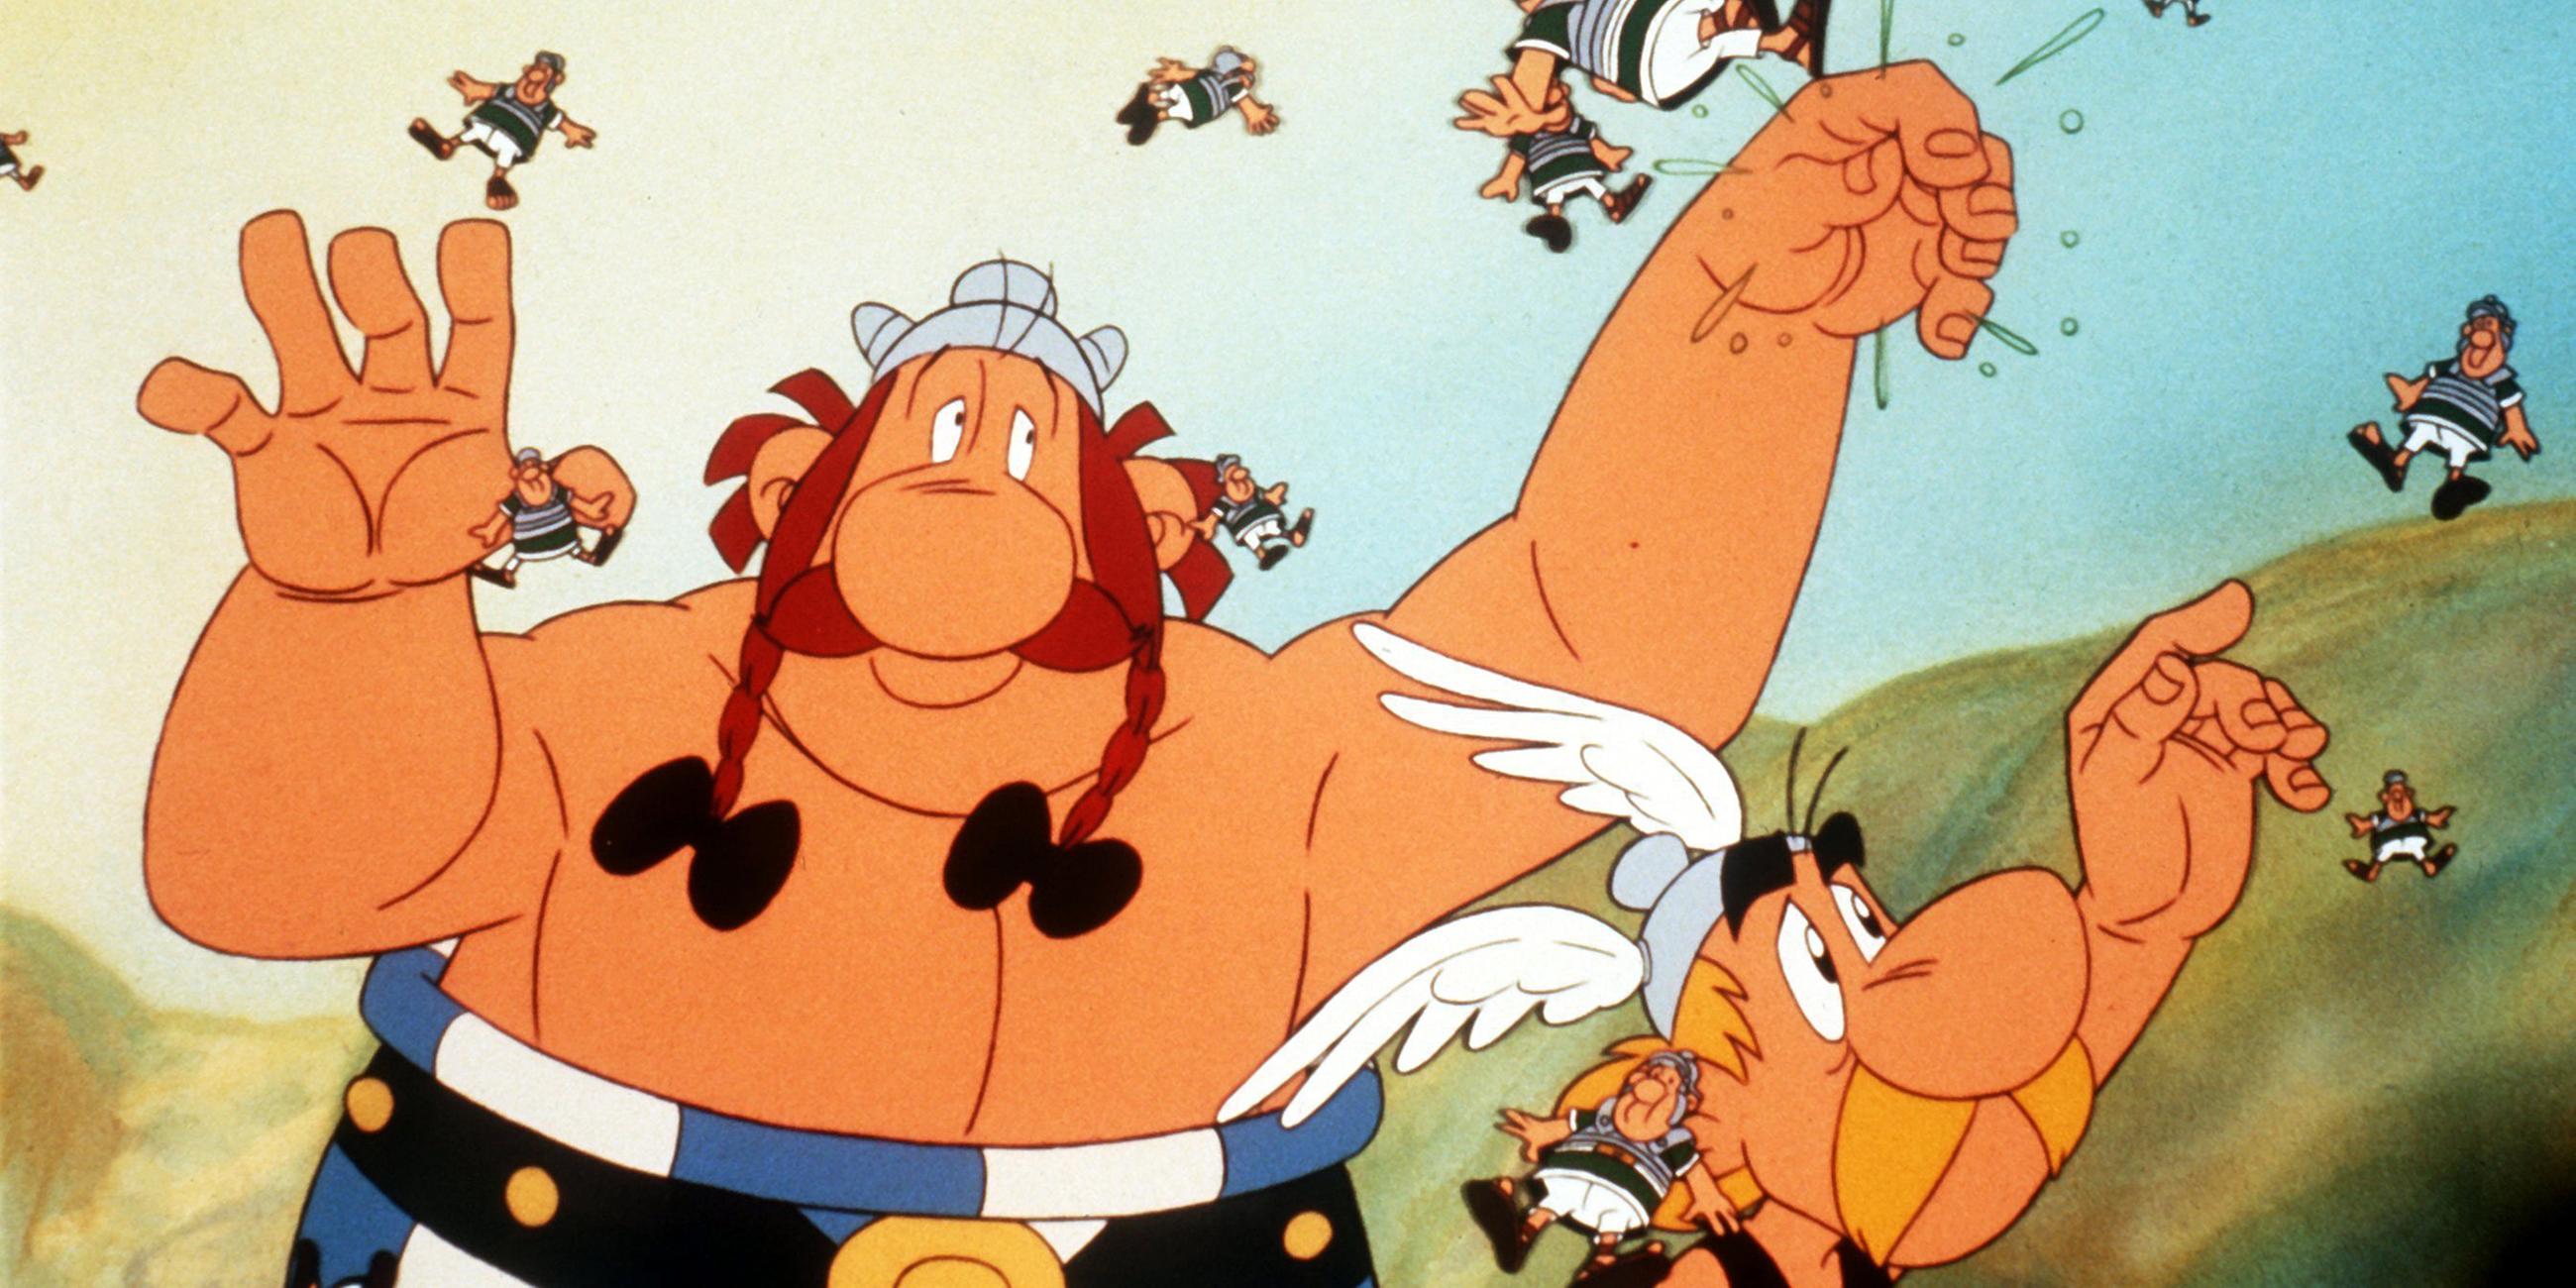 Archiv: Szene aus dem Weltbekannten Comicstreifen "Asterix und Obelix".